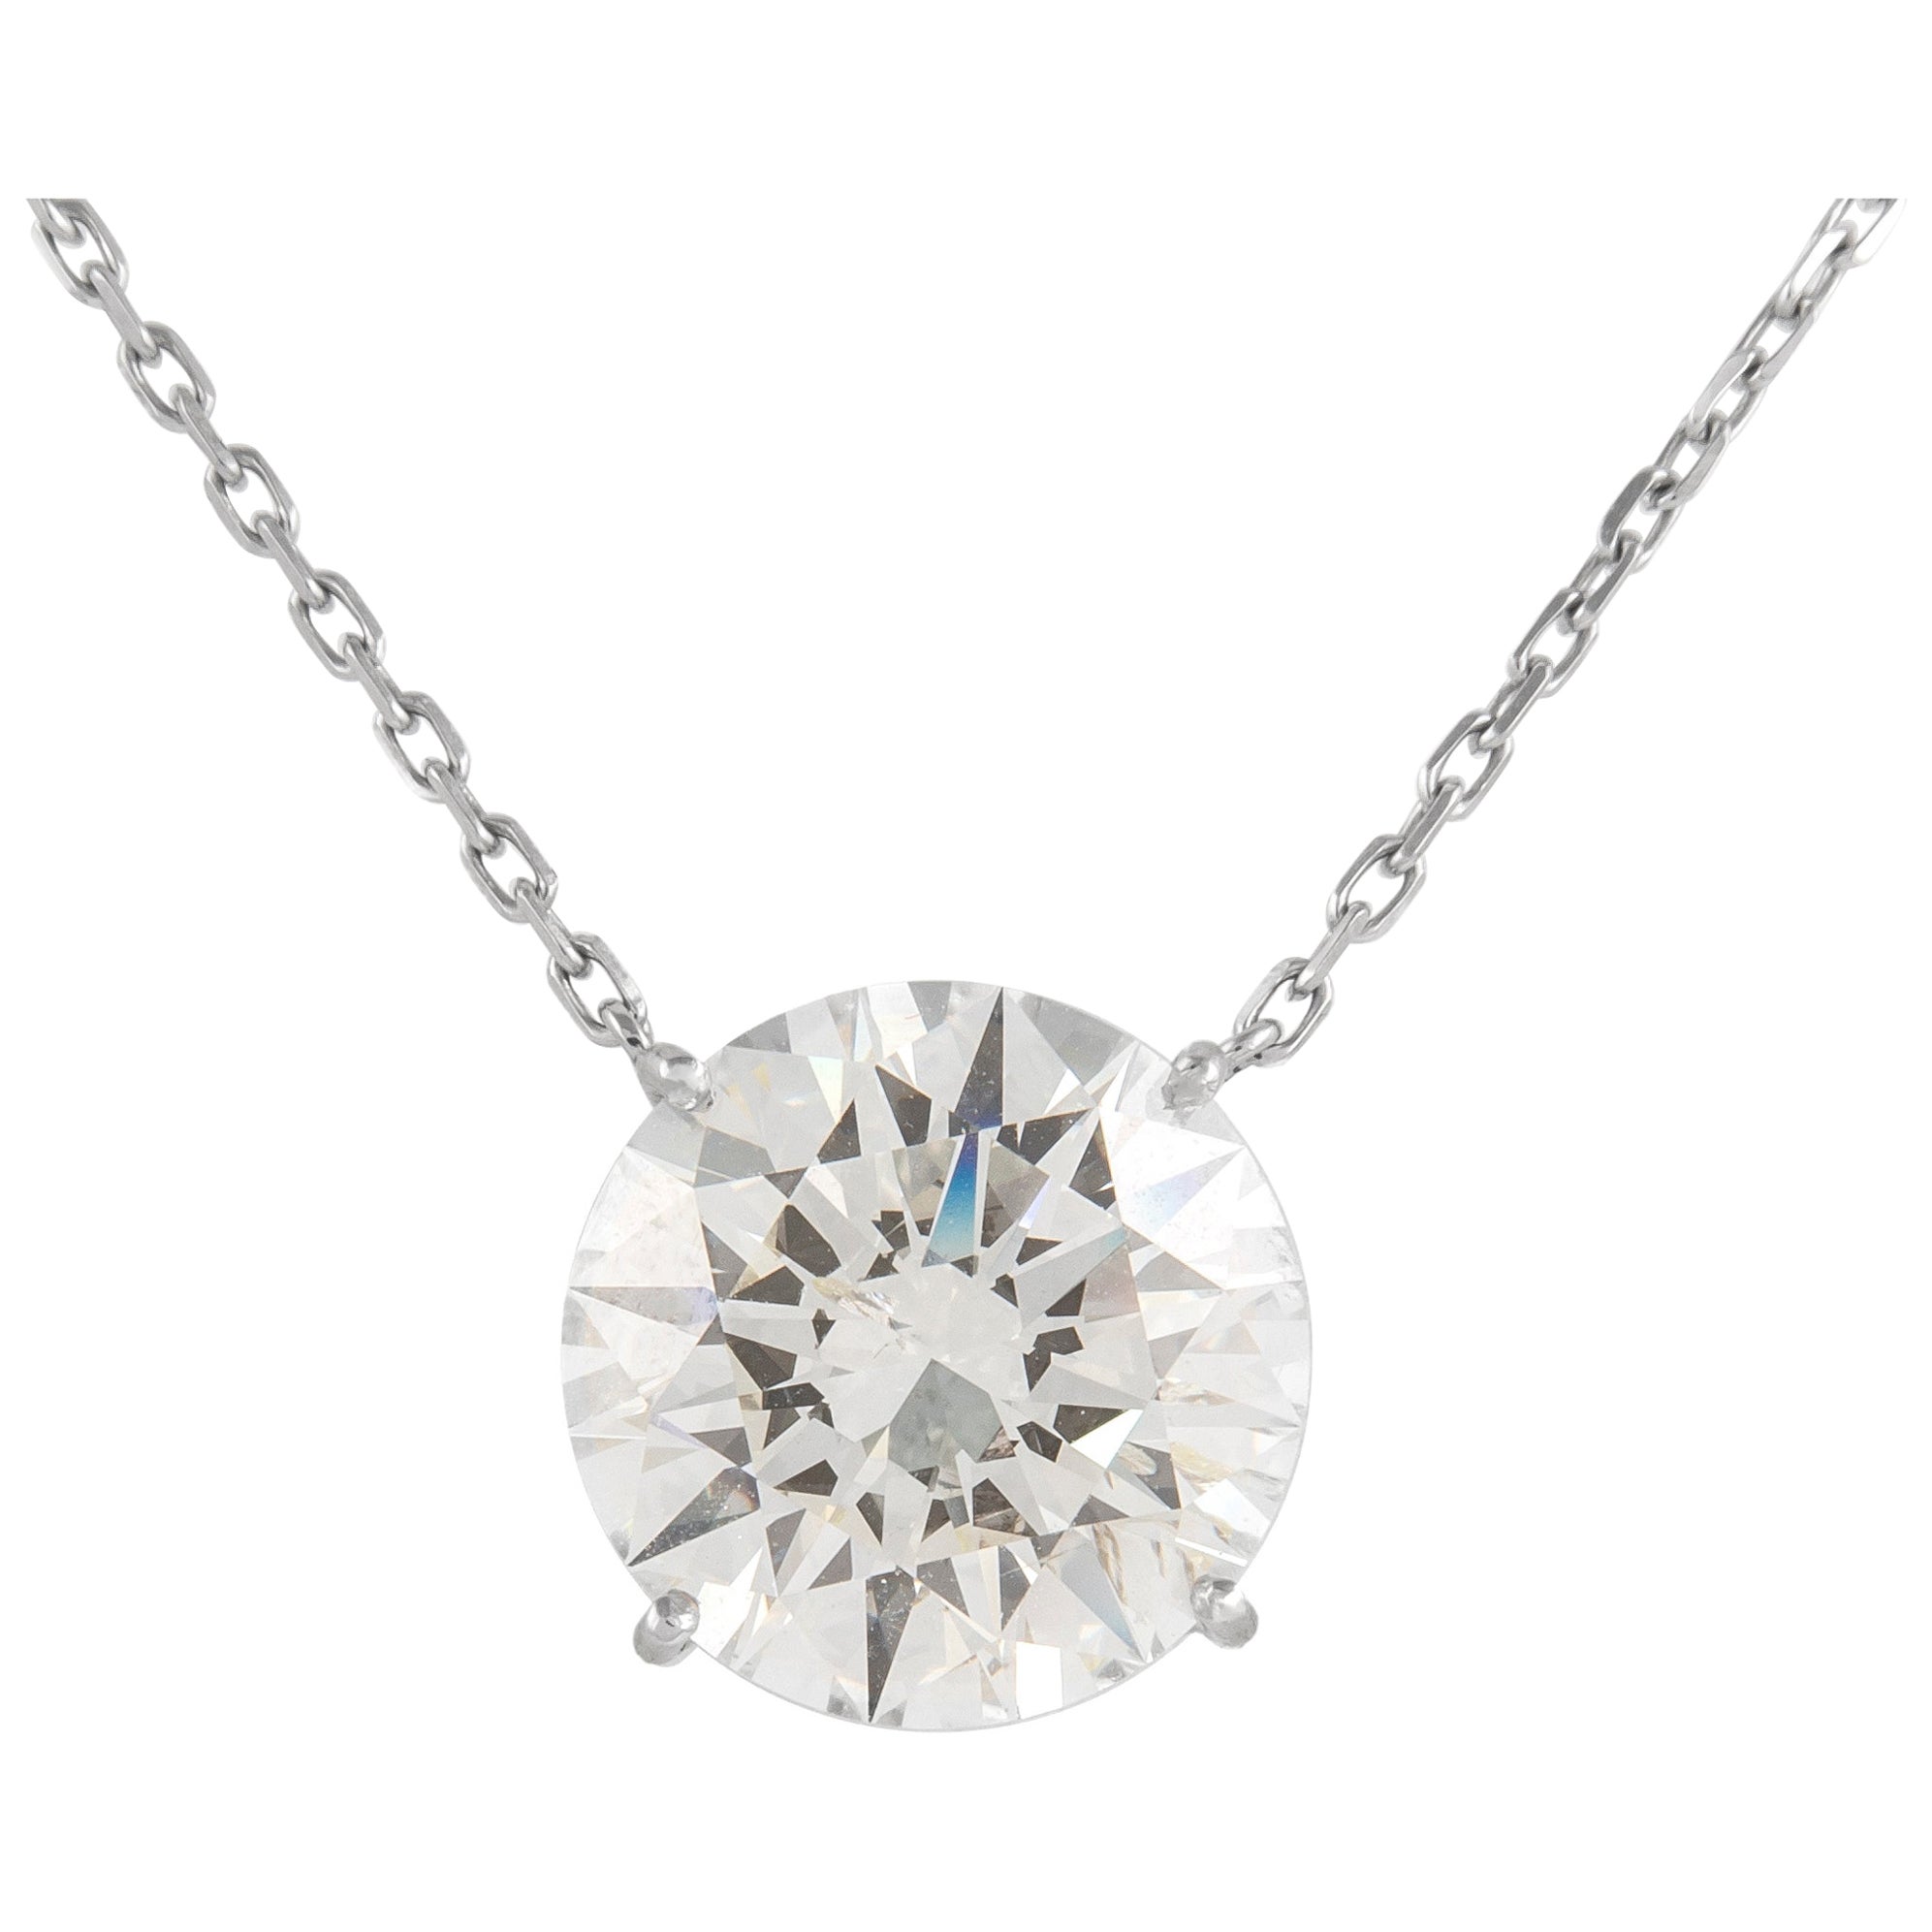 Alexander, collier pendentif solitaire en or blanc 18 carats et diamants 8,43 carats